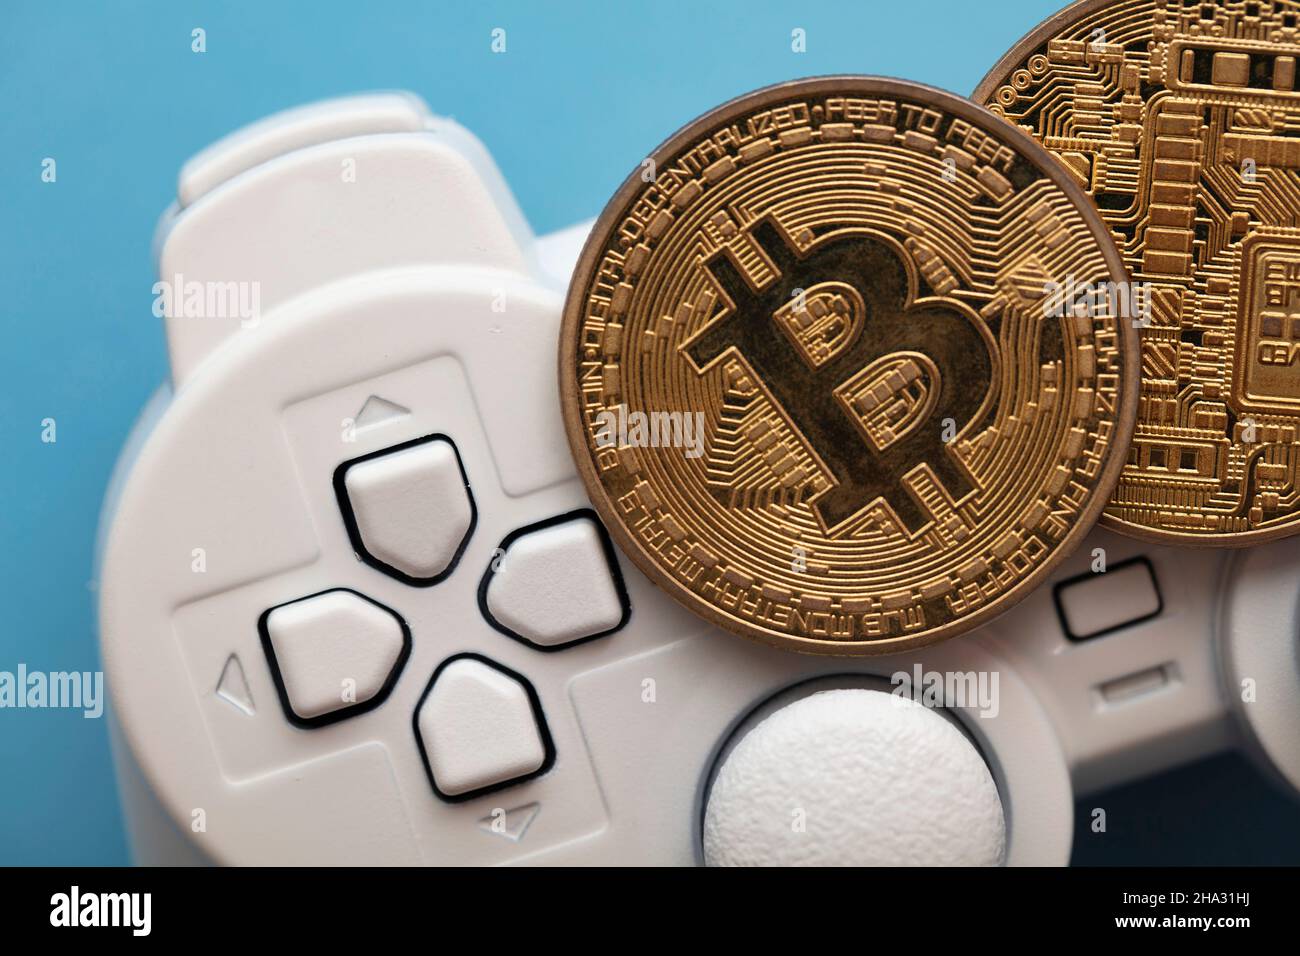 Krypto-Gaming-Konzept. Videospiel-Controller mit einer Bitcoin-Kryptowährung-Münze Stockfoto